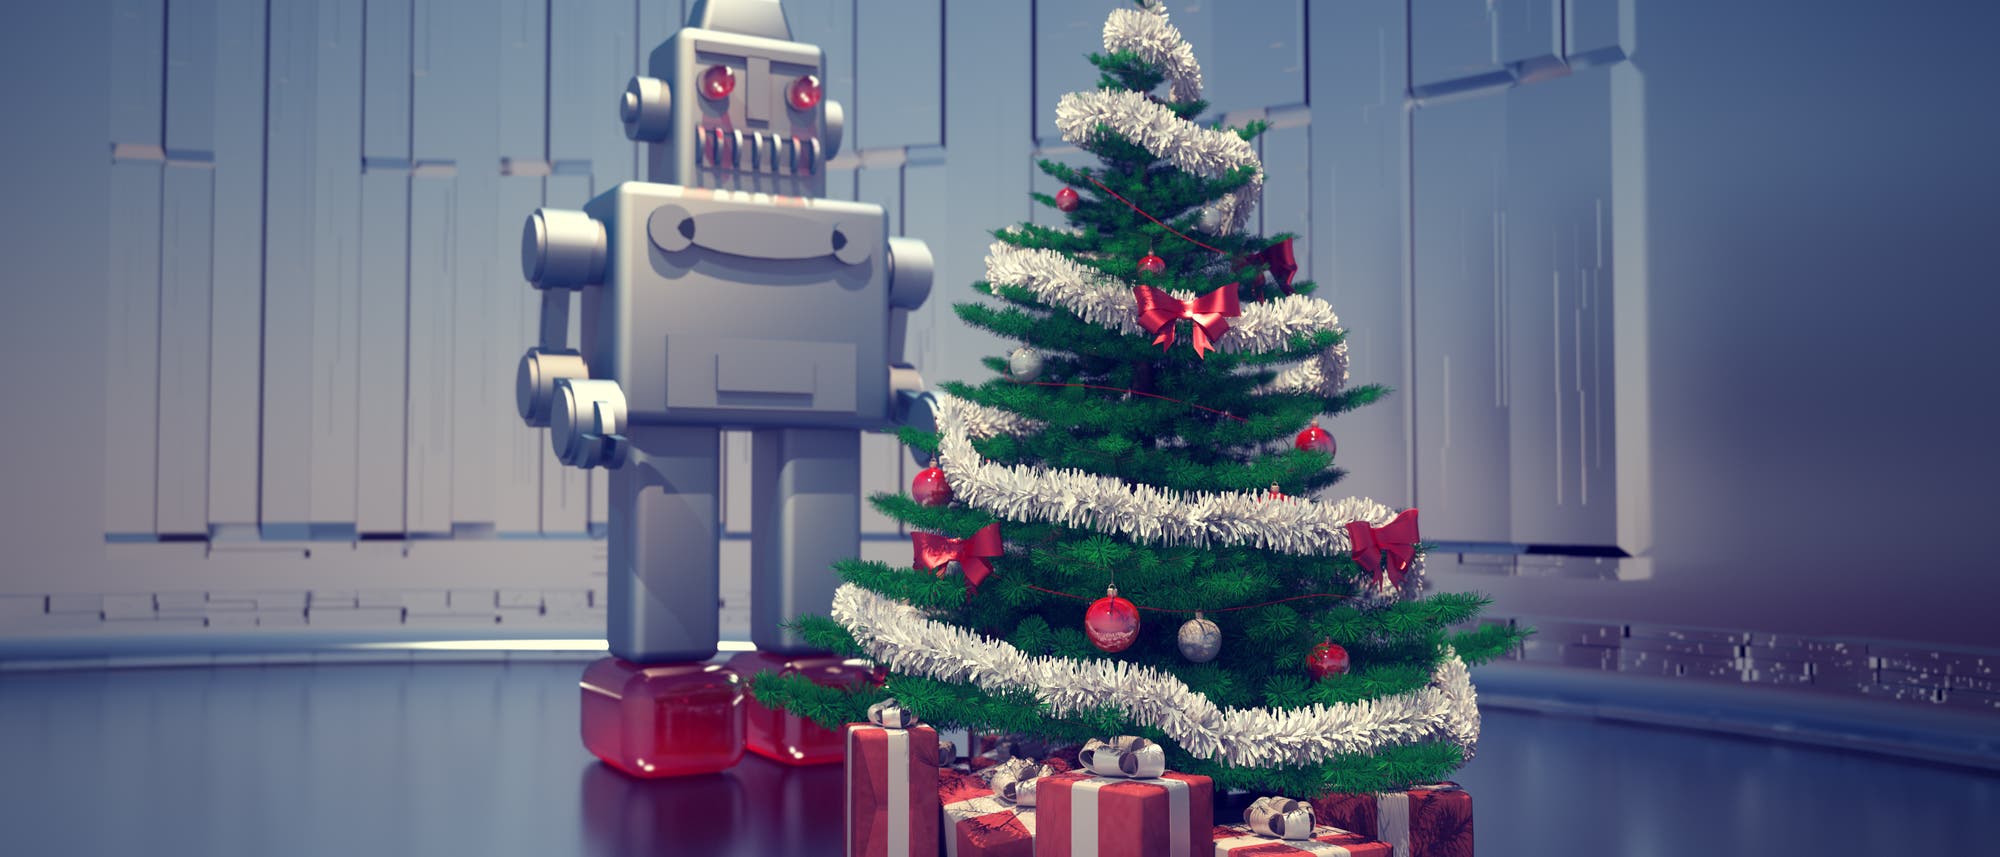 Ein Roboter steht hinter einem Weihnachtsbaum (Illustration)